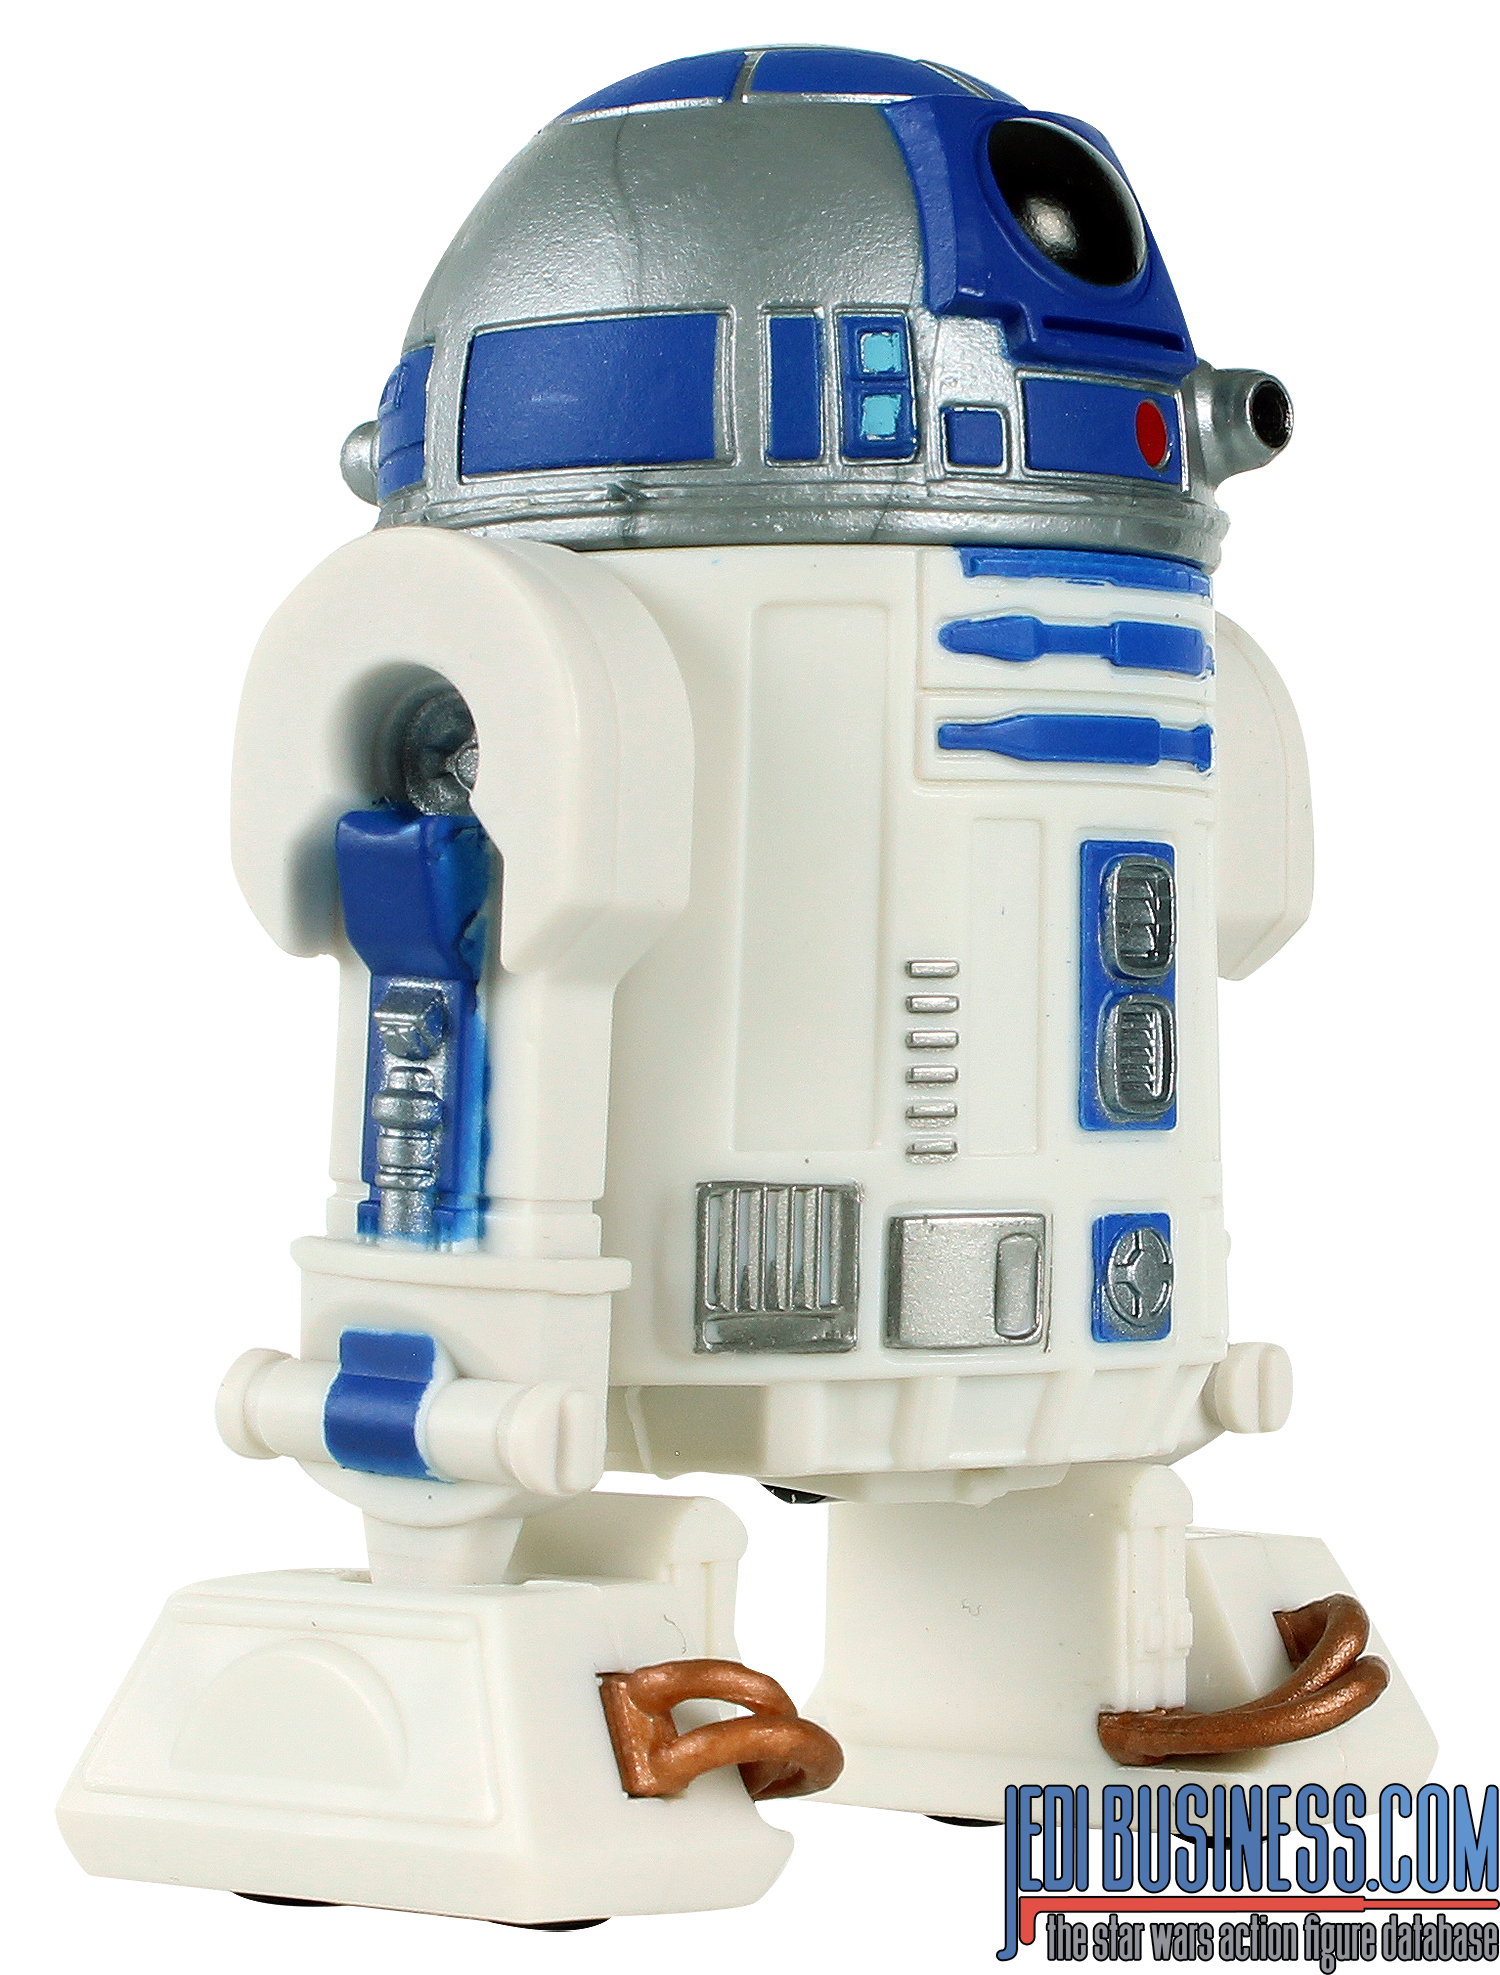 R2-D2 Droid 3-Pack